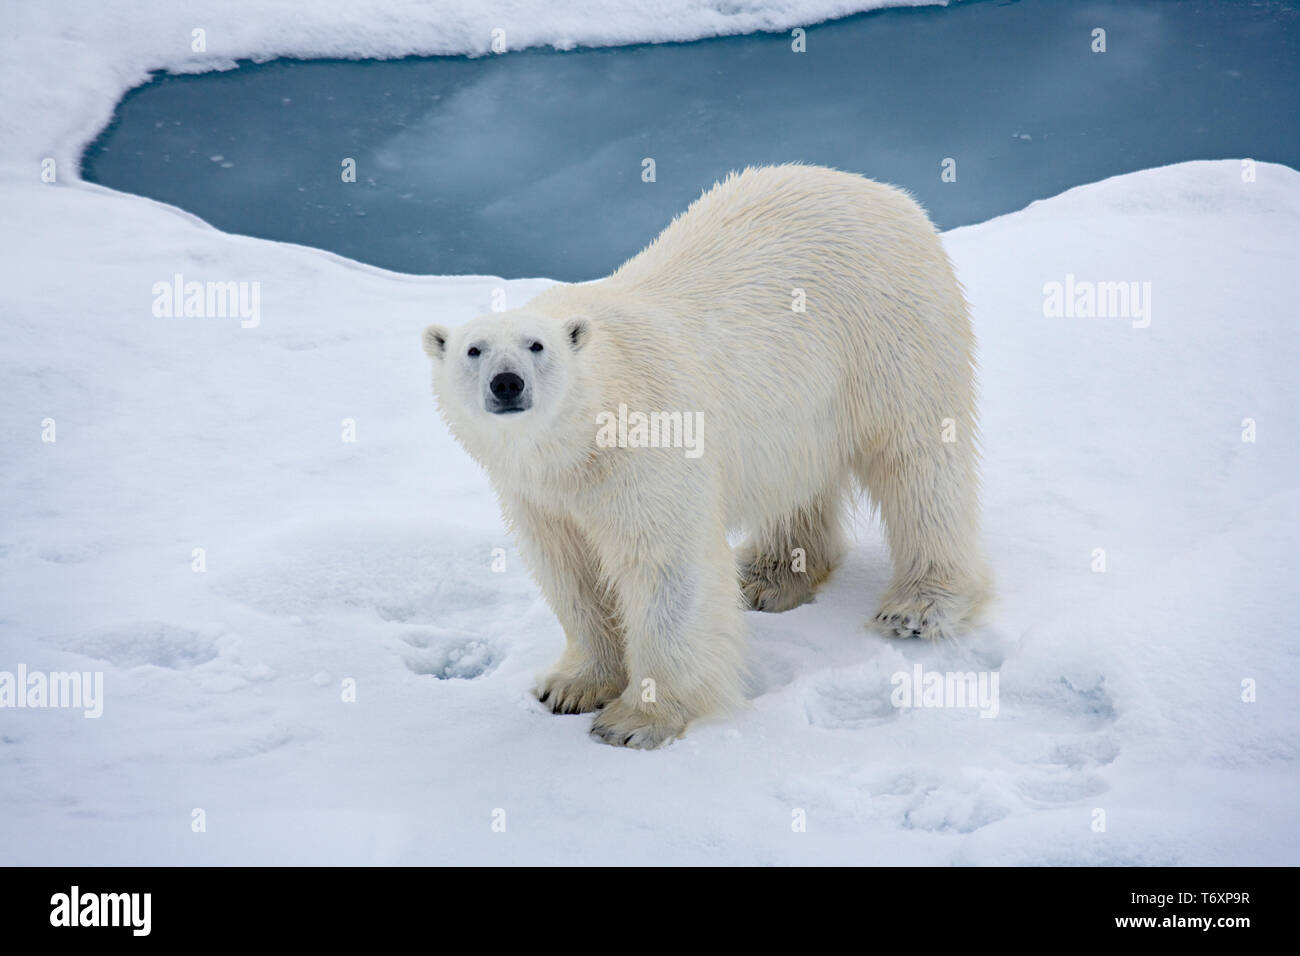 Eisbär (Ursus maritimus) auf dem Meereis in der Arktis, fotografiert während der Reise zum Nordpol an Bord der russischen Eisbrecher Yamal. Stockfoto